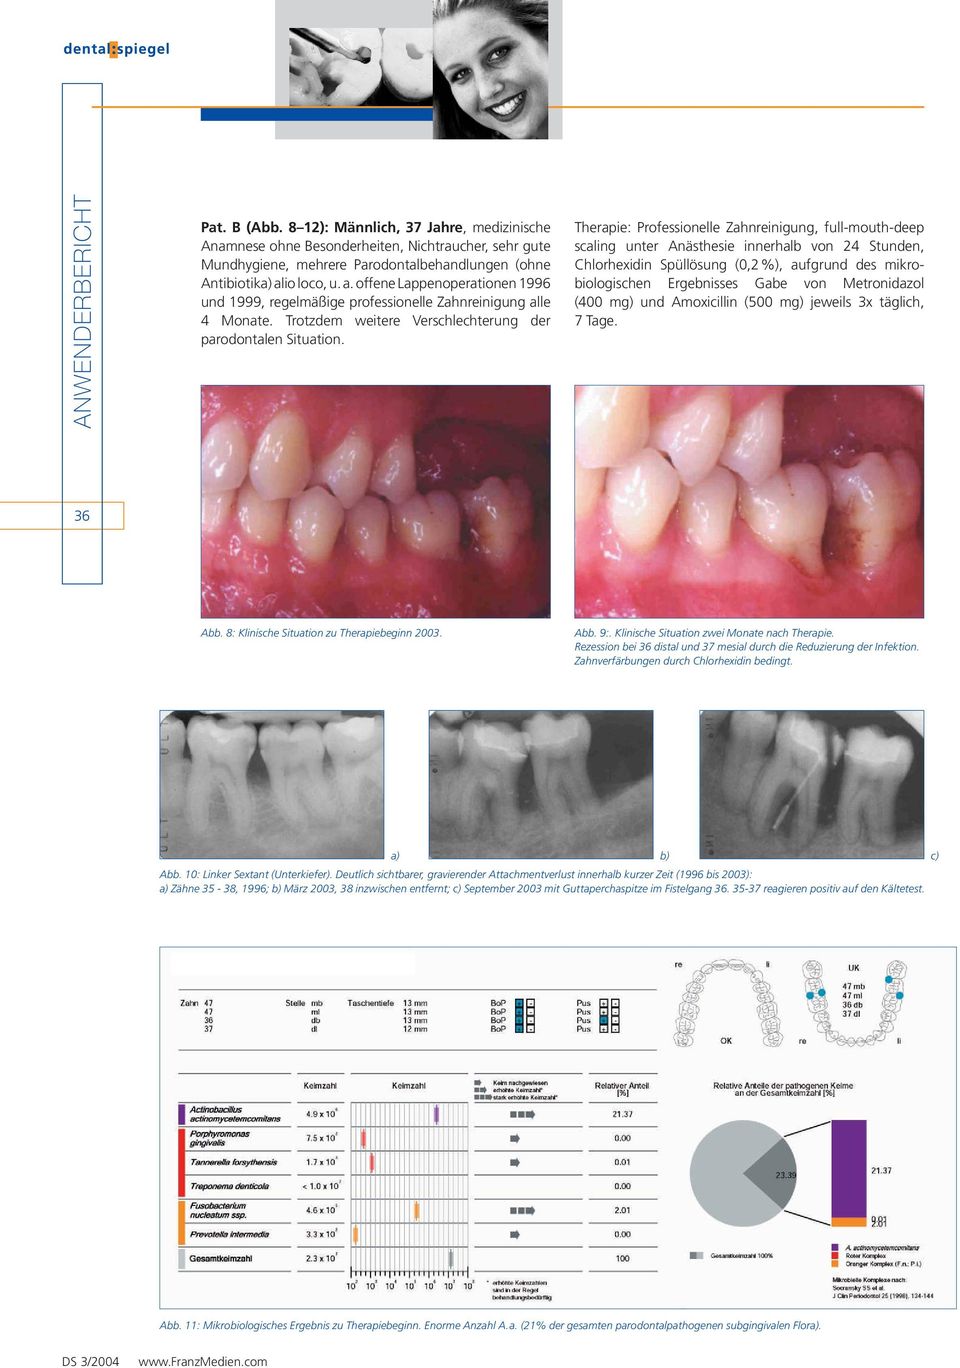 Therapie: Professionelle Zahnreinigung, full-mouth-deep scaling unter Anästhesie innerhalb von 24 Stunden, Chlorhexidin Spüllösung (0,2%), aufgrund des mikrobiologischen Ergebnisses Gabe von